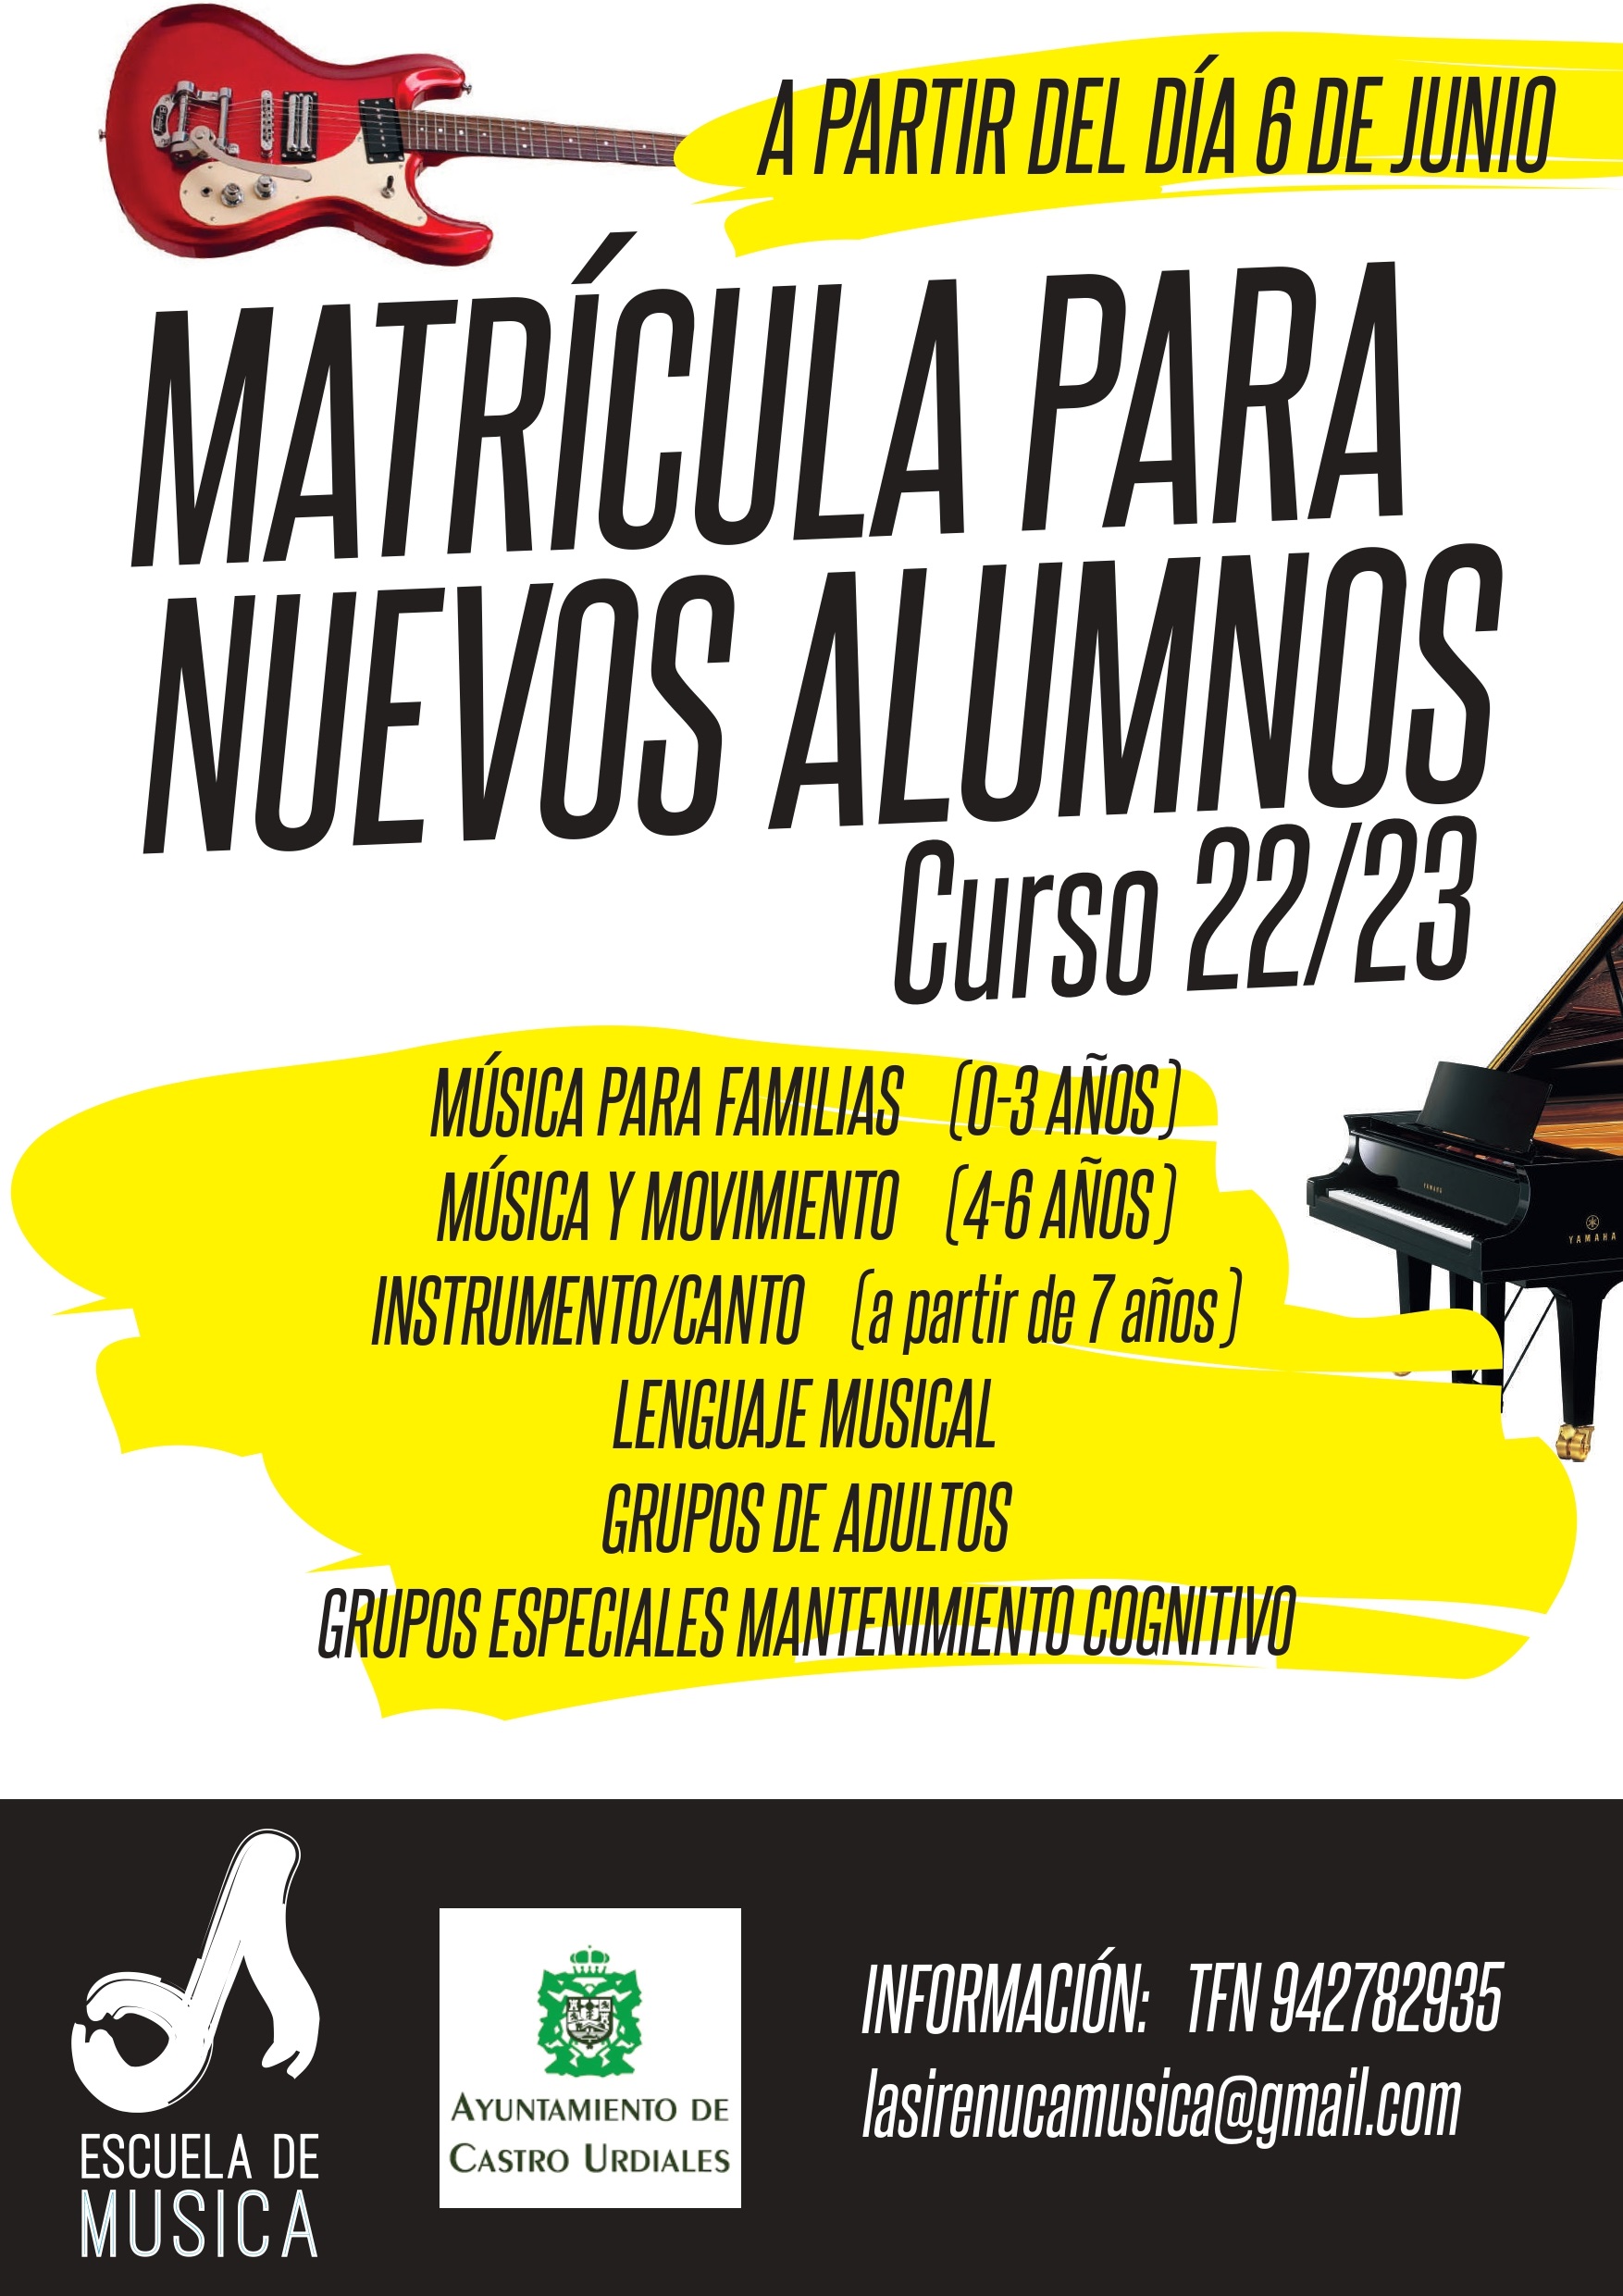 Escuela de Música "La Sirenuca" - Curso 2022/2023